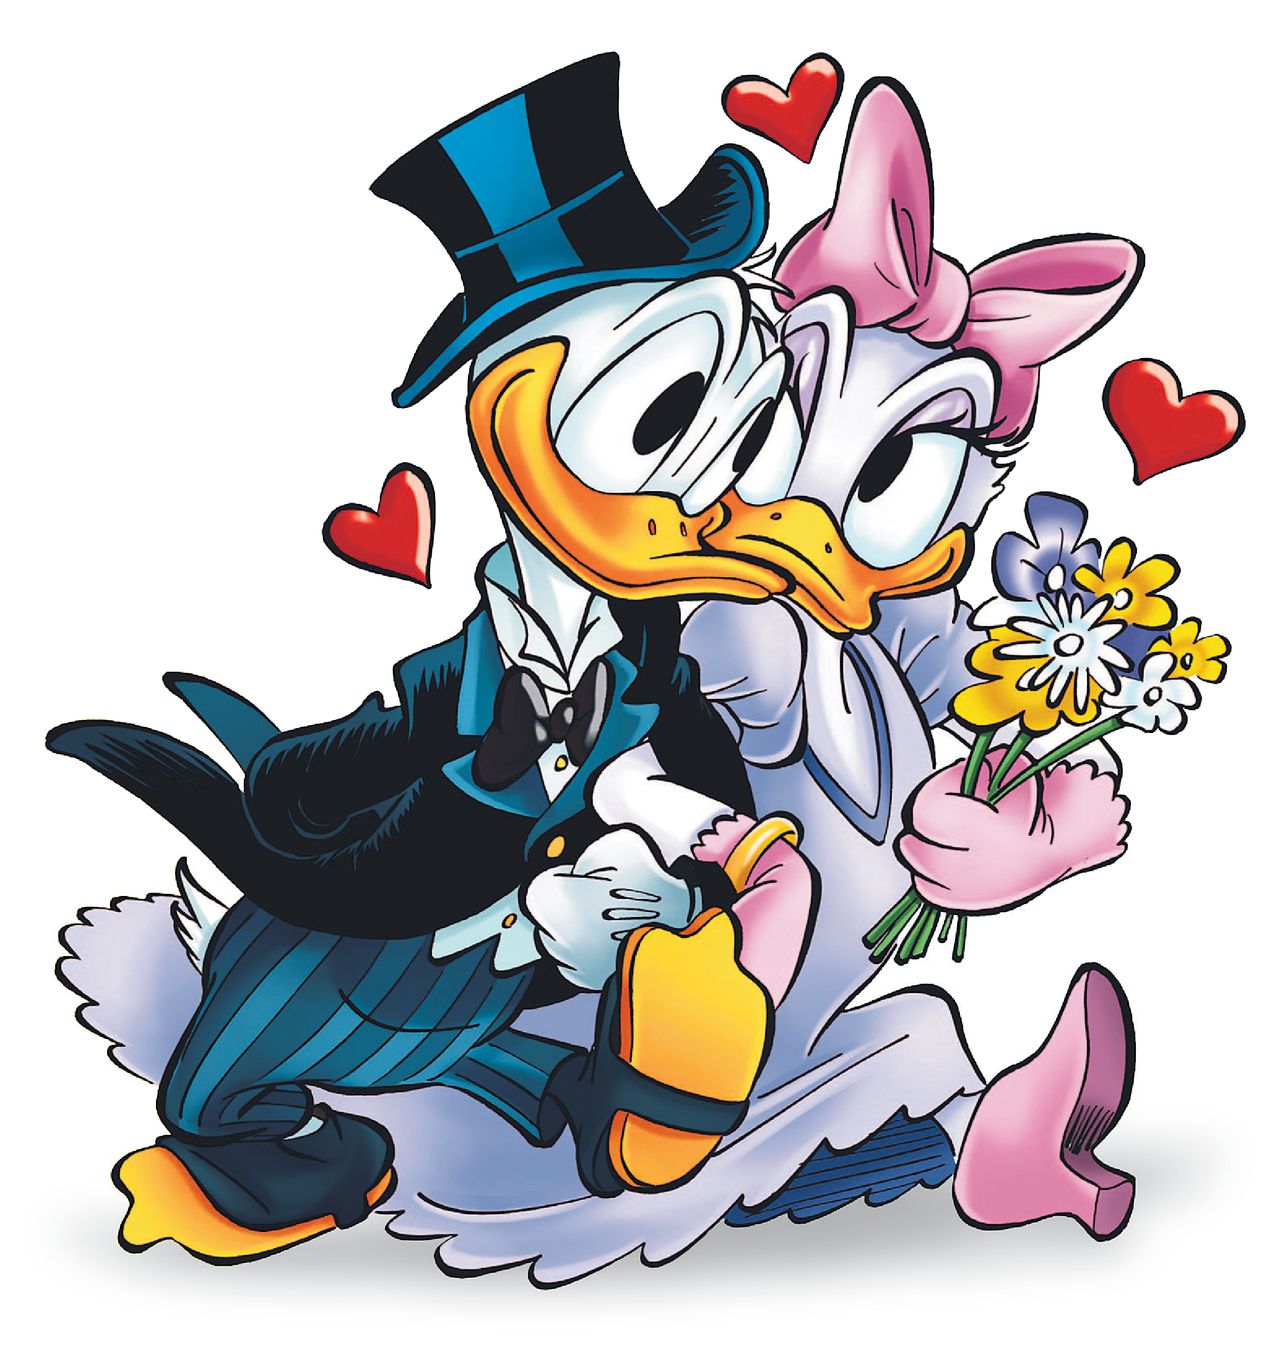 Donald enKatrien willen trouwen in de liefdesspecial van deze week. 